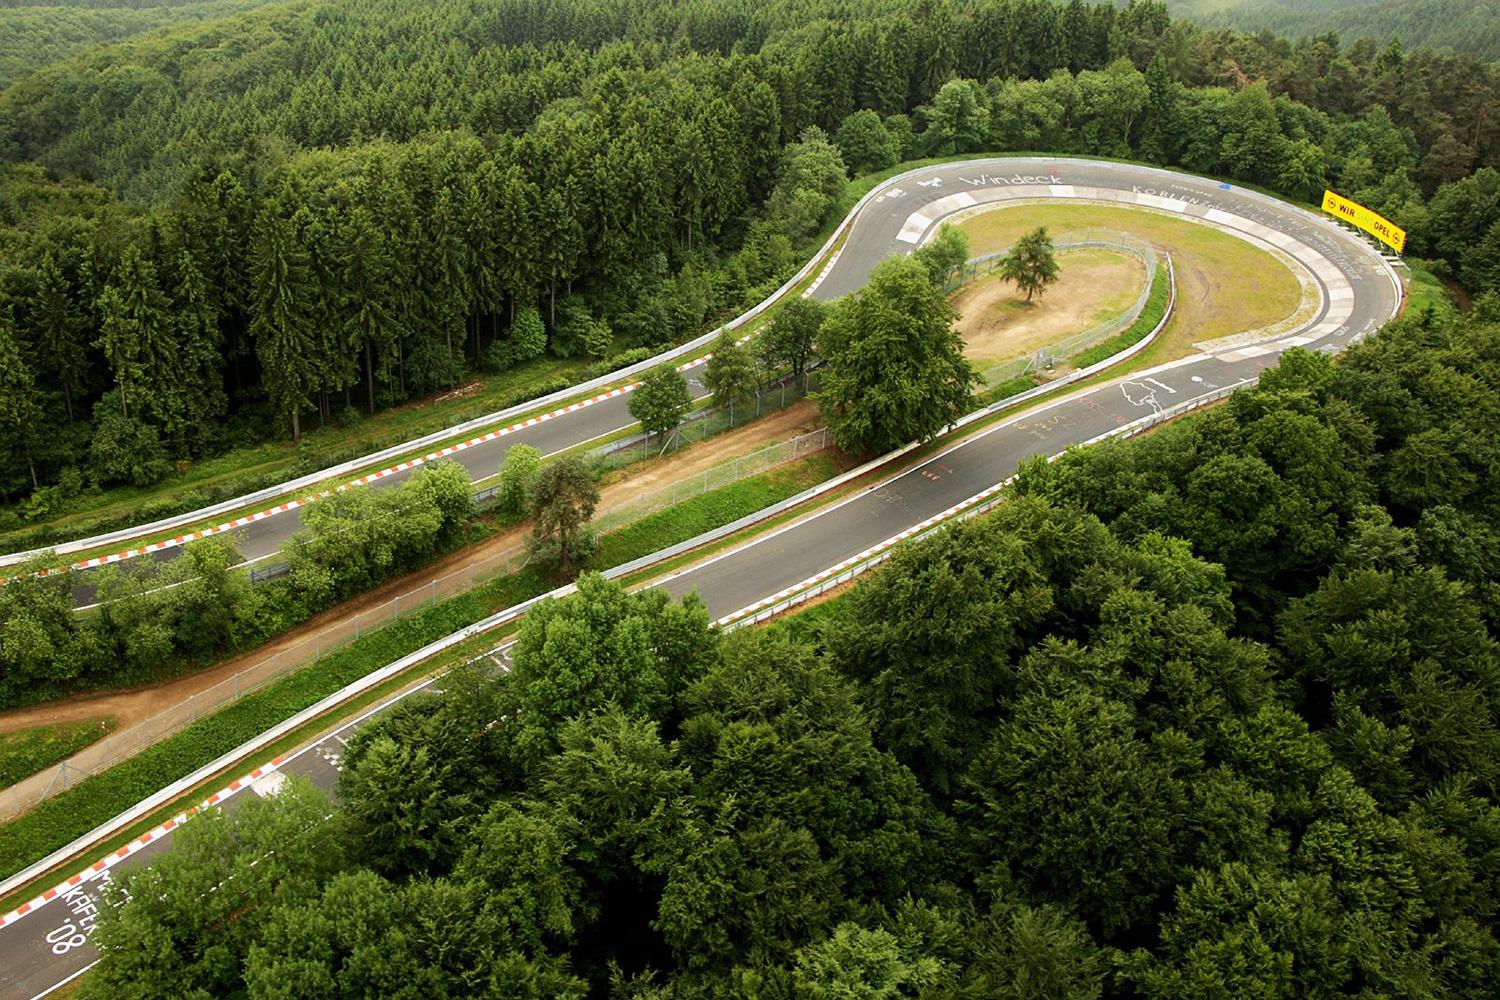 Nurburgring track